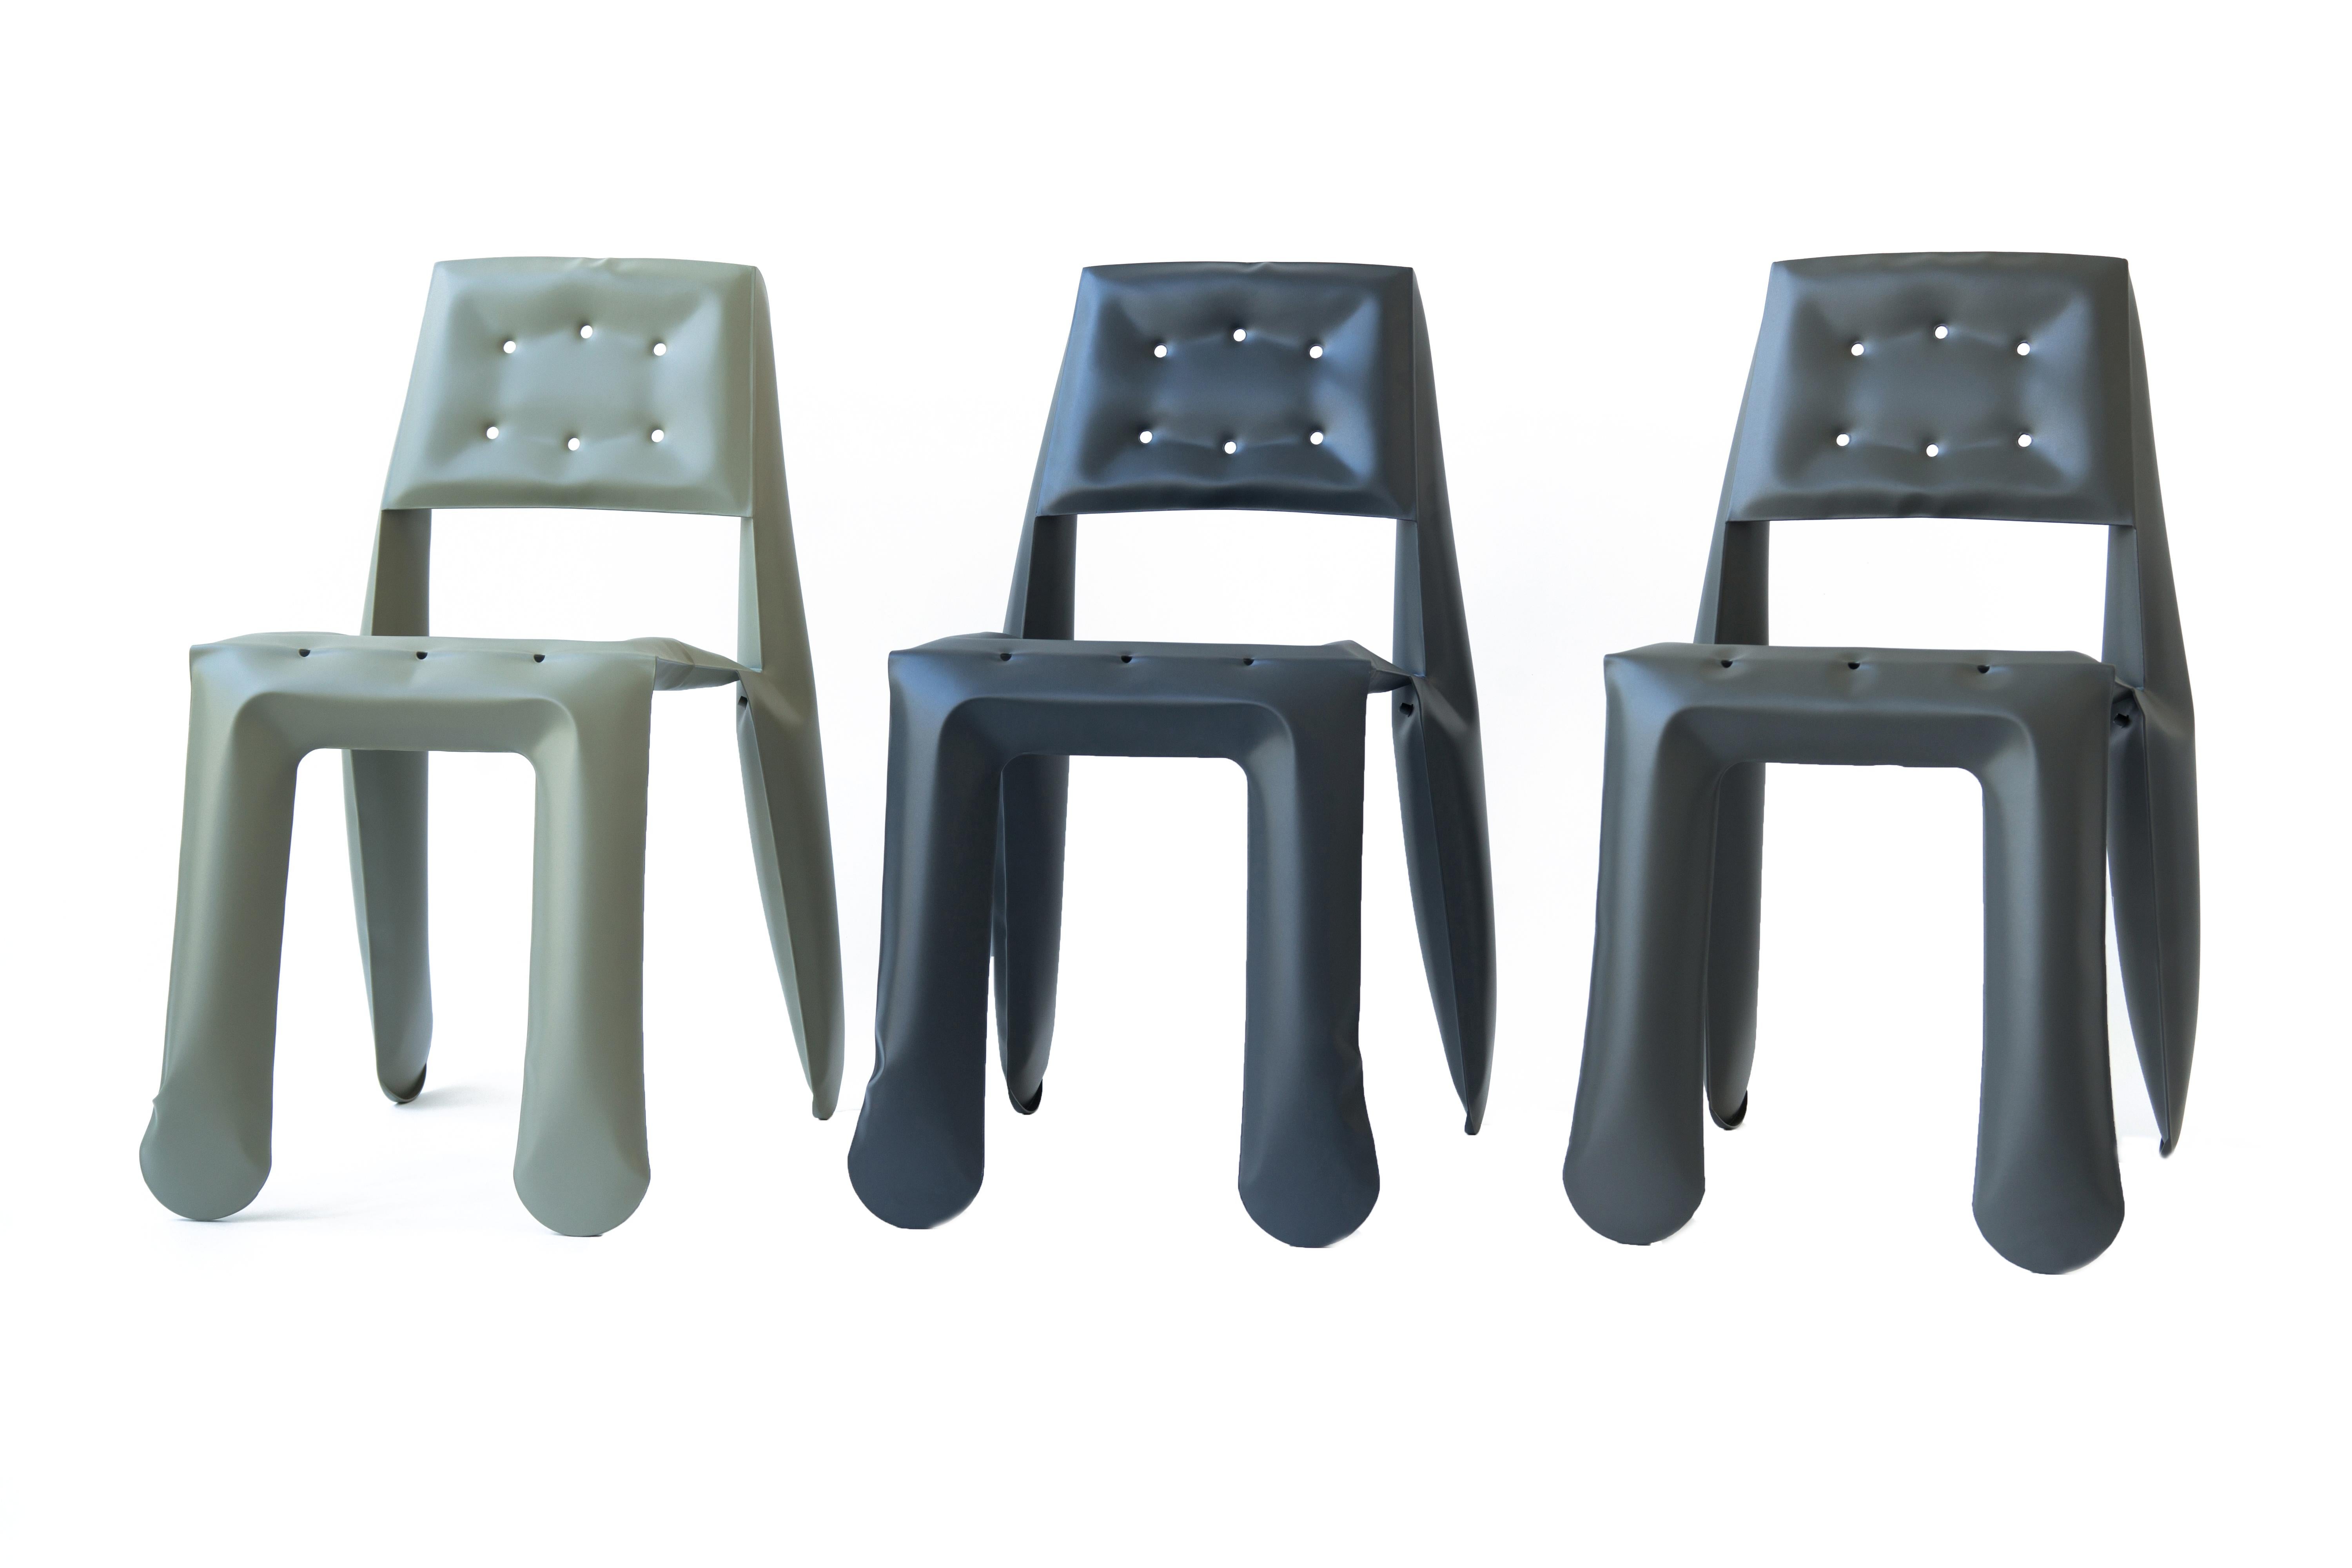 Beige Carbon Steel Chippensteel 0.5 Sculptural Chair by Zieta For Sale 4